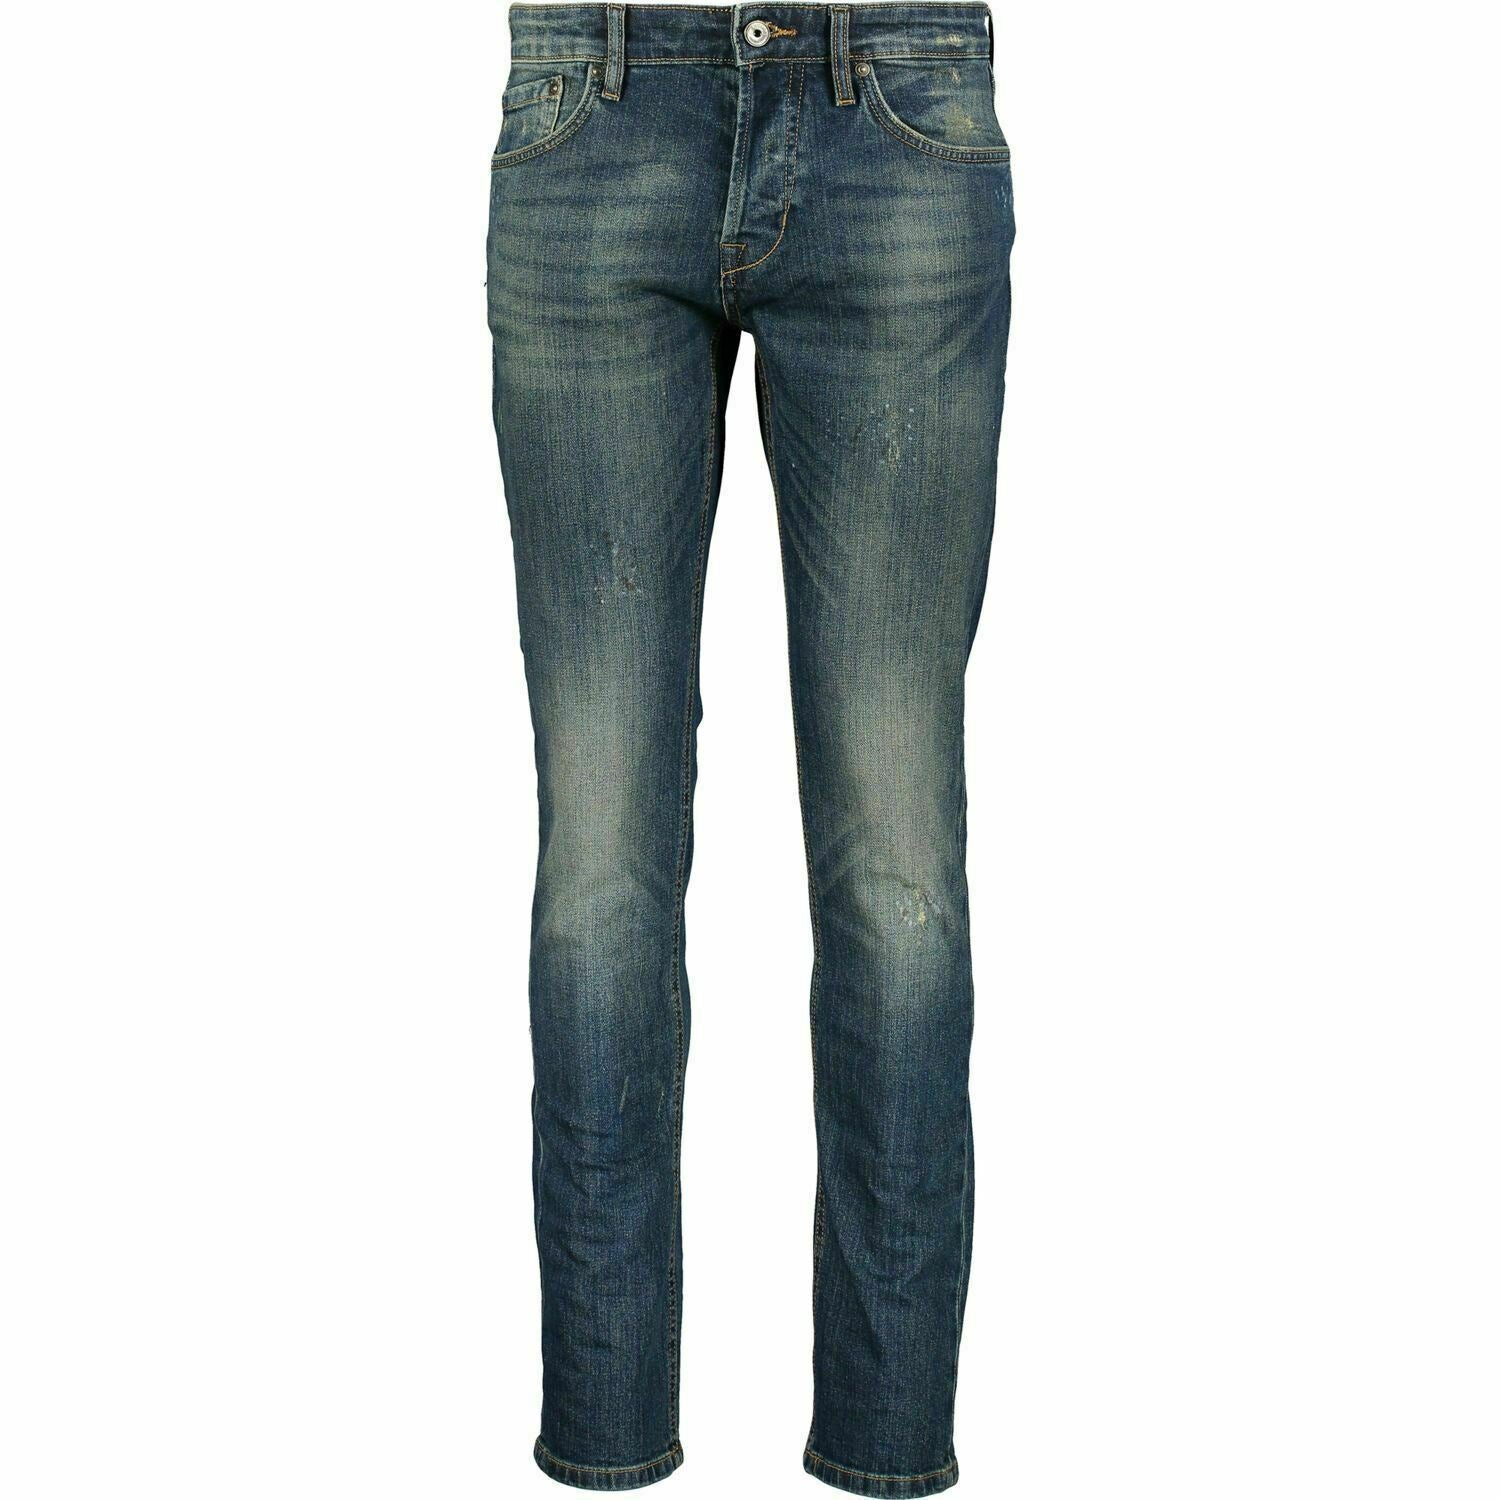 JUST CAVALLI Men's Blue Distressed Slim Denim Jeans, size W28